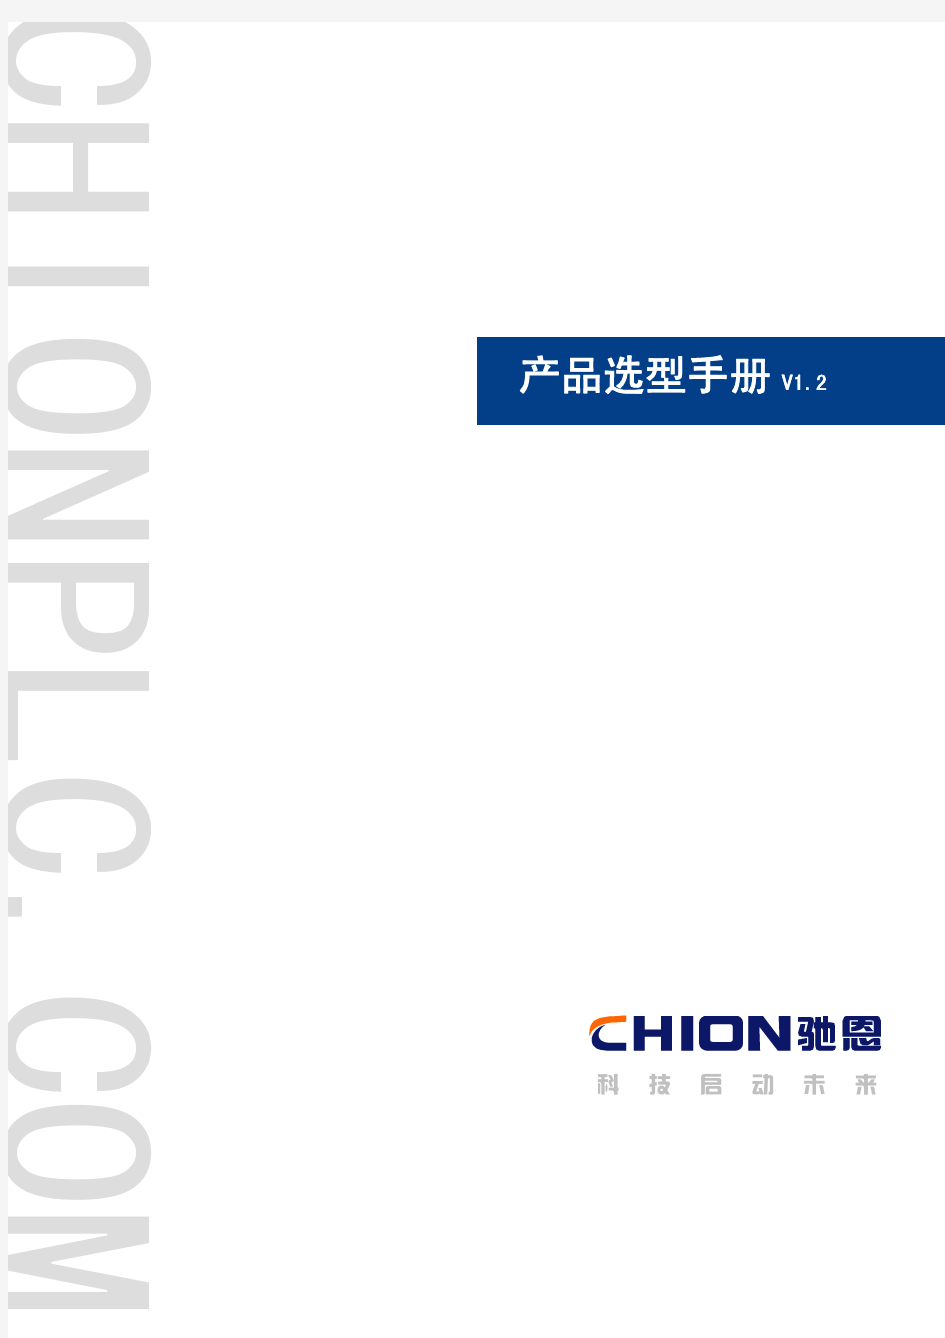 上海正航电子驰恩-CHION系列PLC选型手册